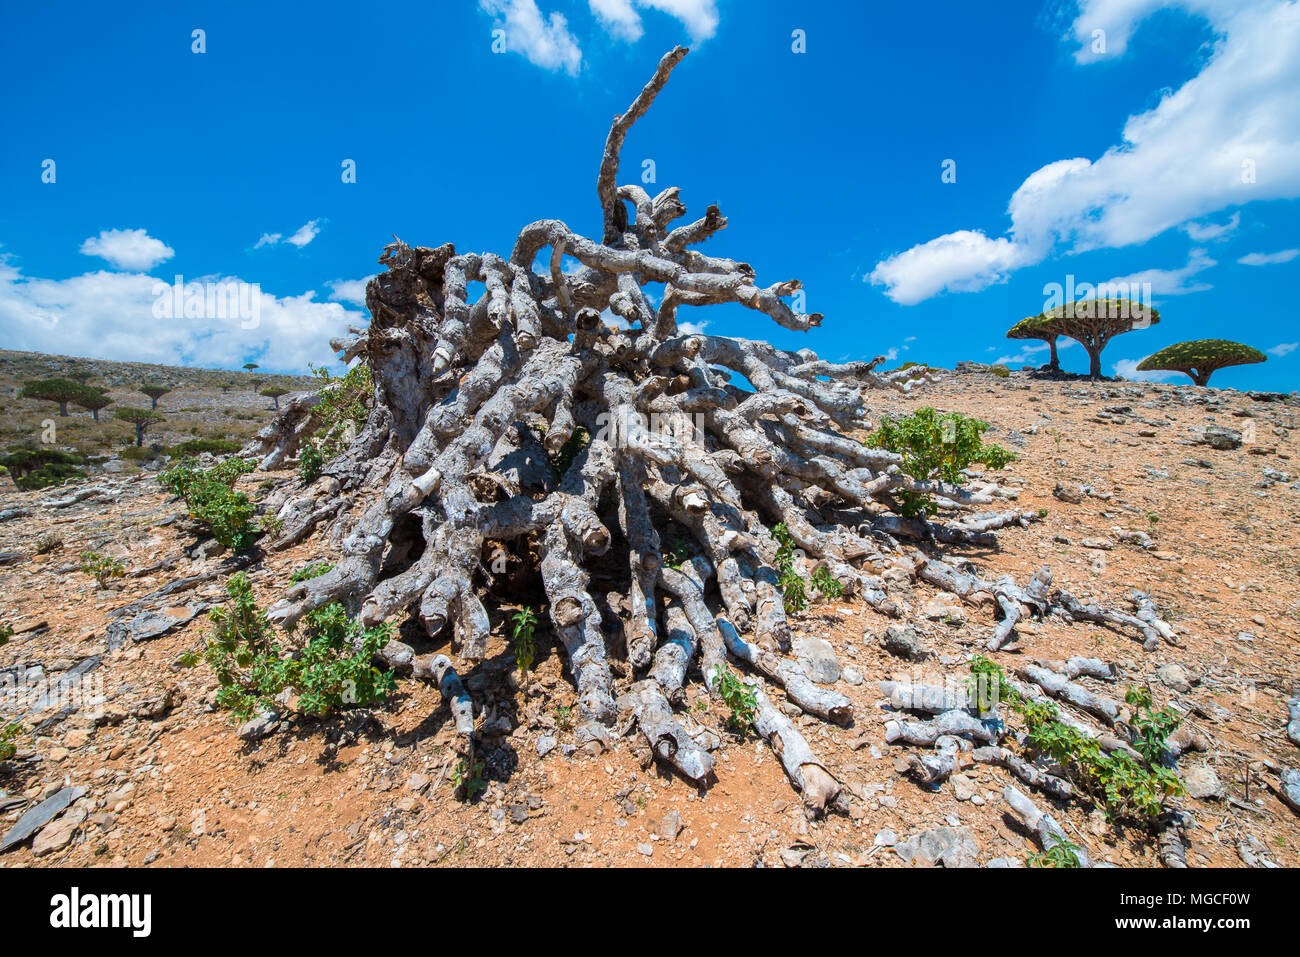 Nature of the Socotra Archipelago, Yemen Stock Photo